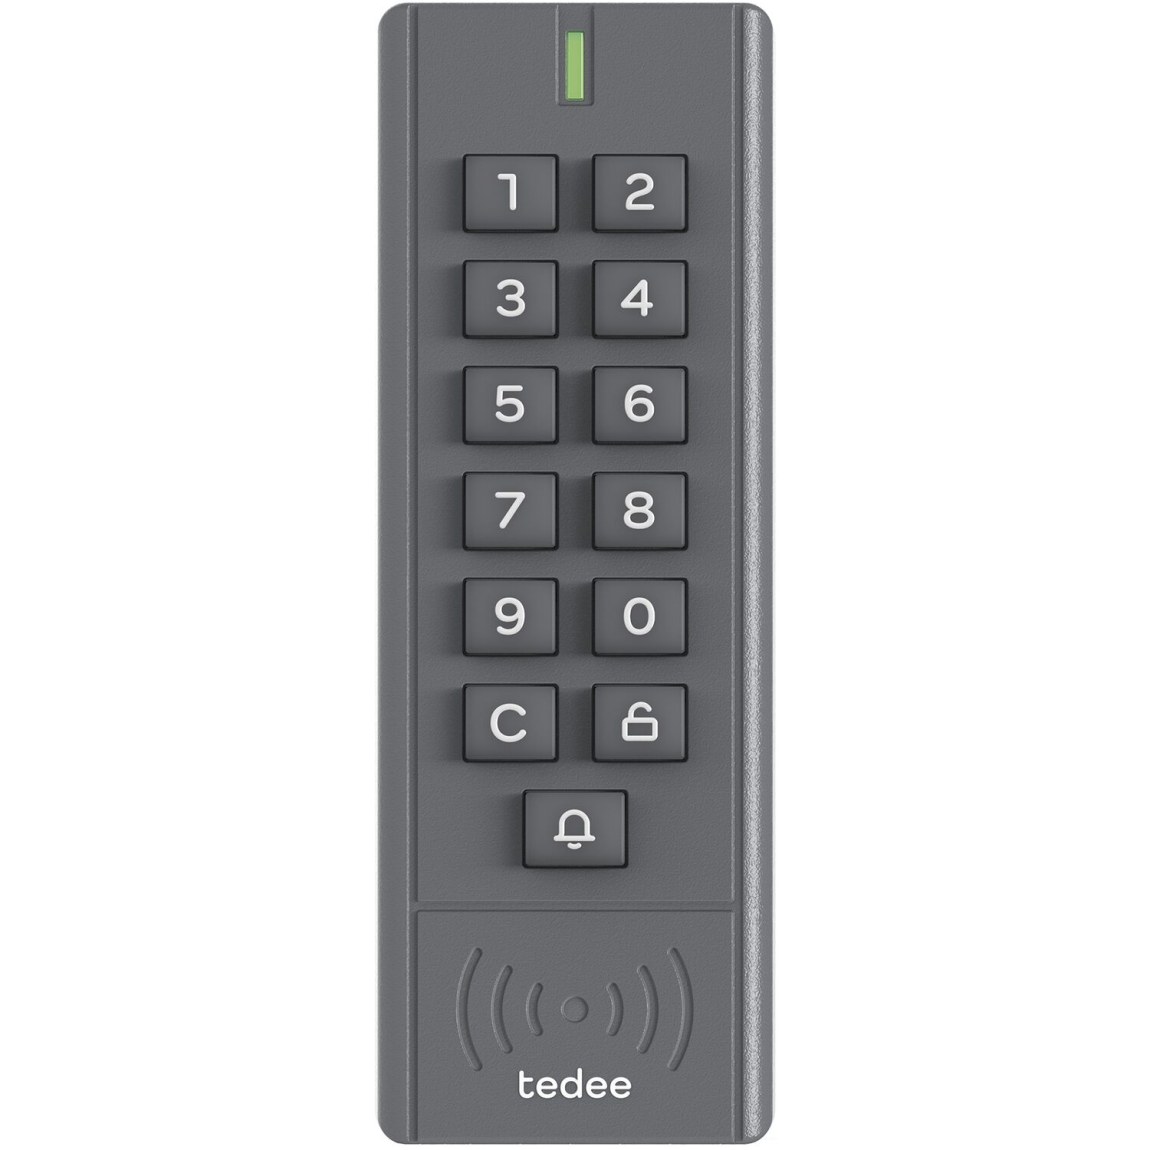 Číselná klávesnice TEDEE Keypad - Vše co patří na a do dveří Cylindrické vložky Mechatronické, elektromotorické